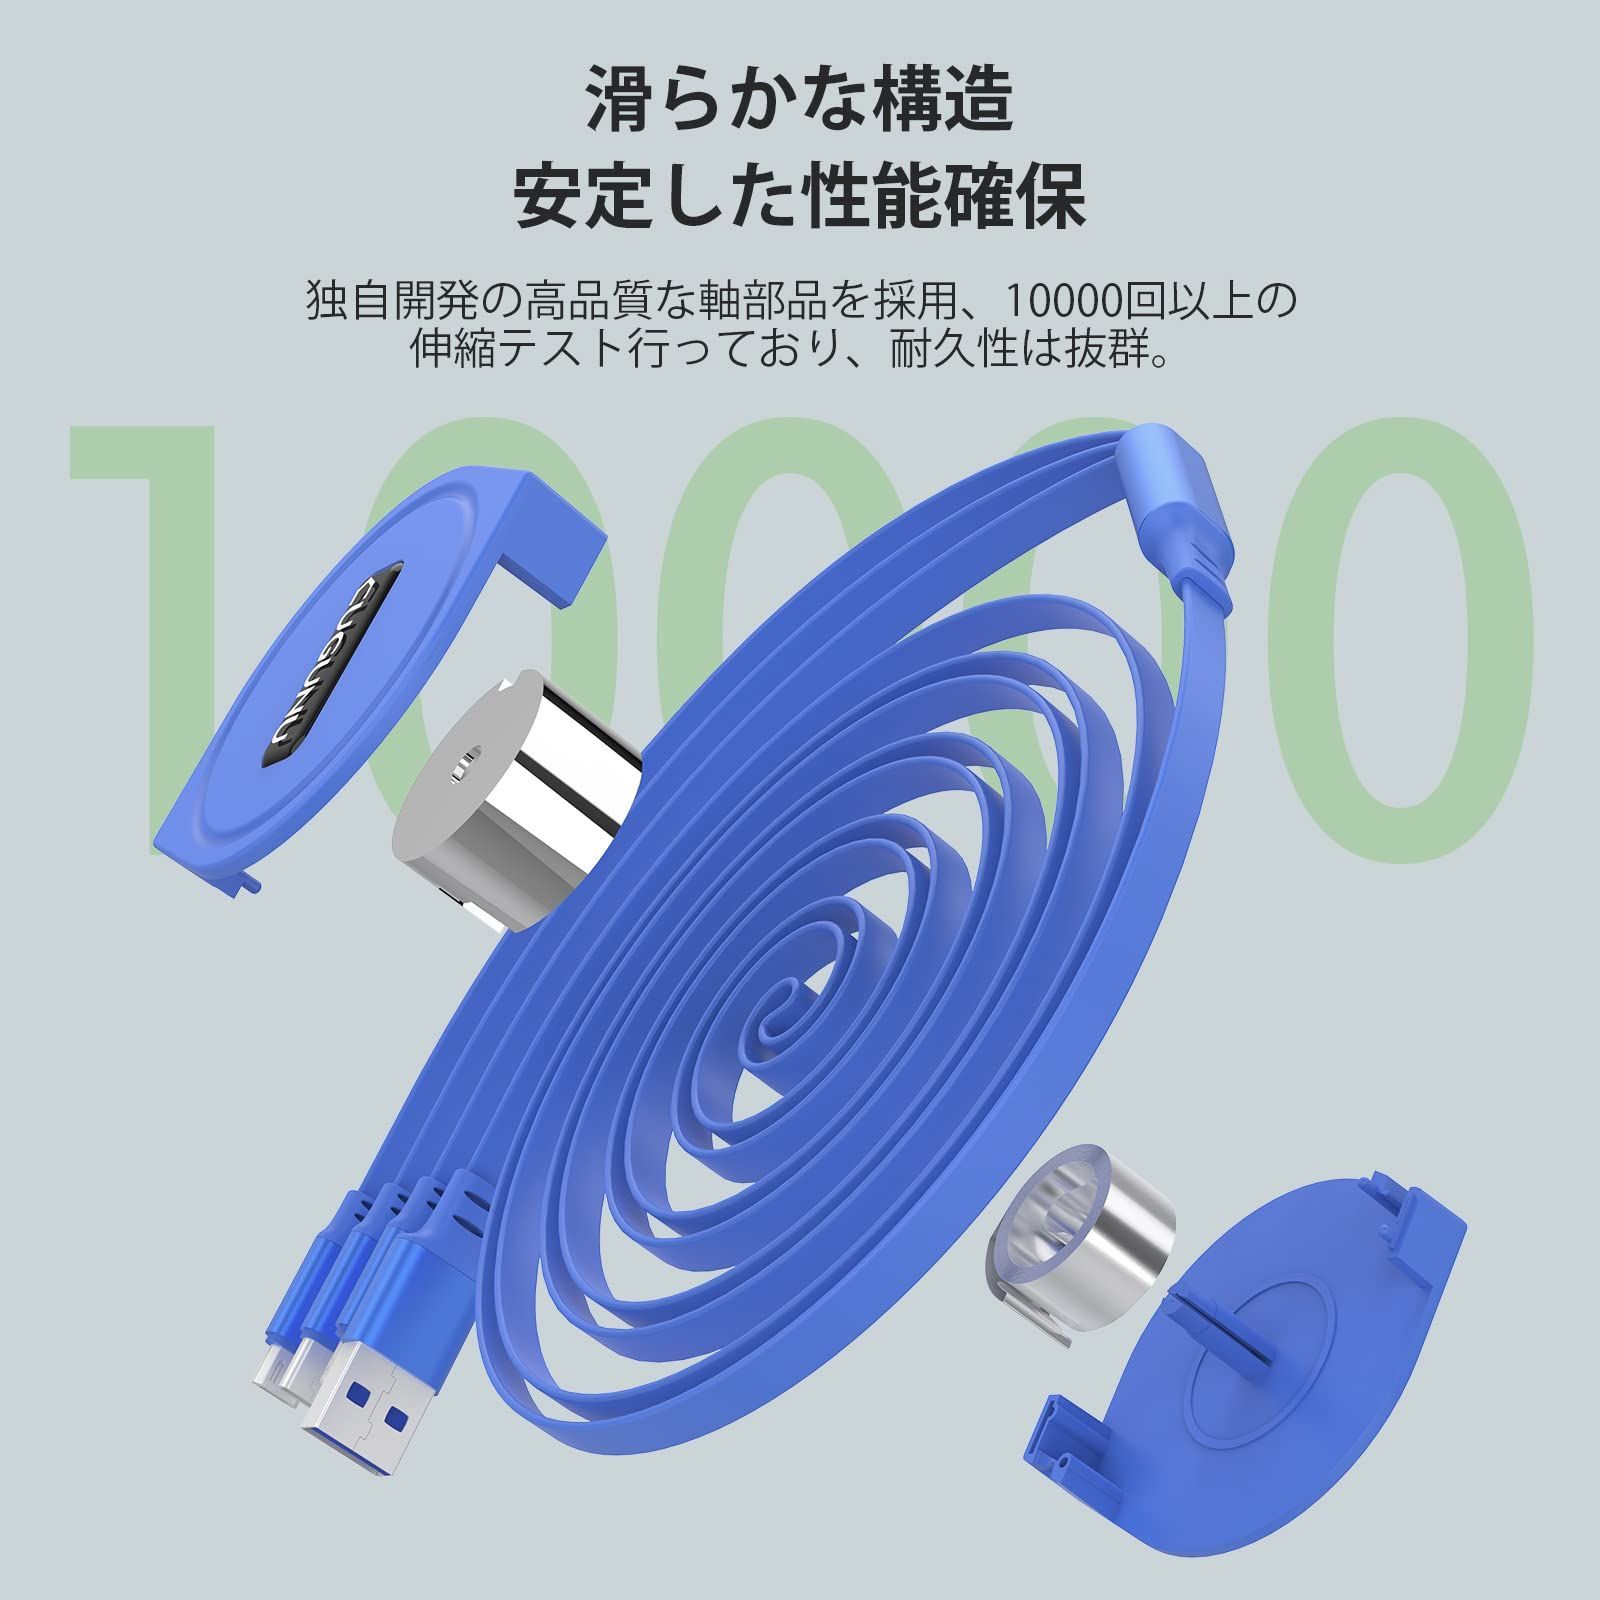 特価セール】ライトニング とusbケーブル USB iPhone Type 3A急速充電